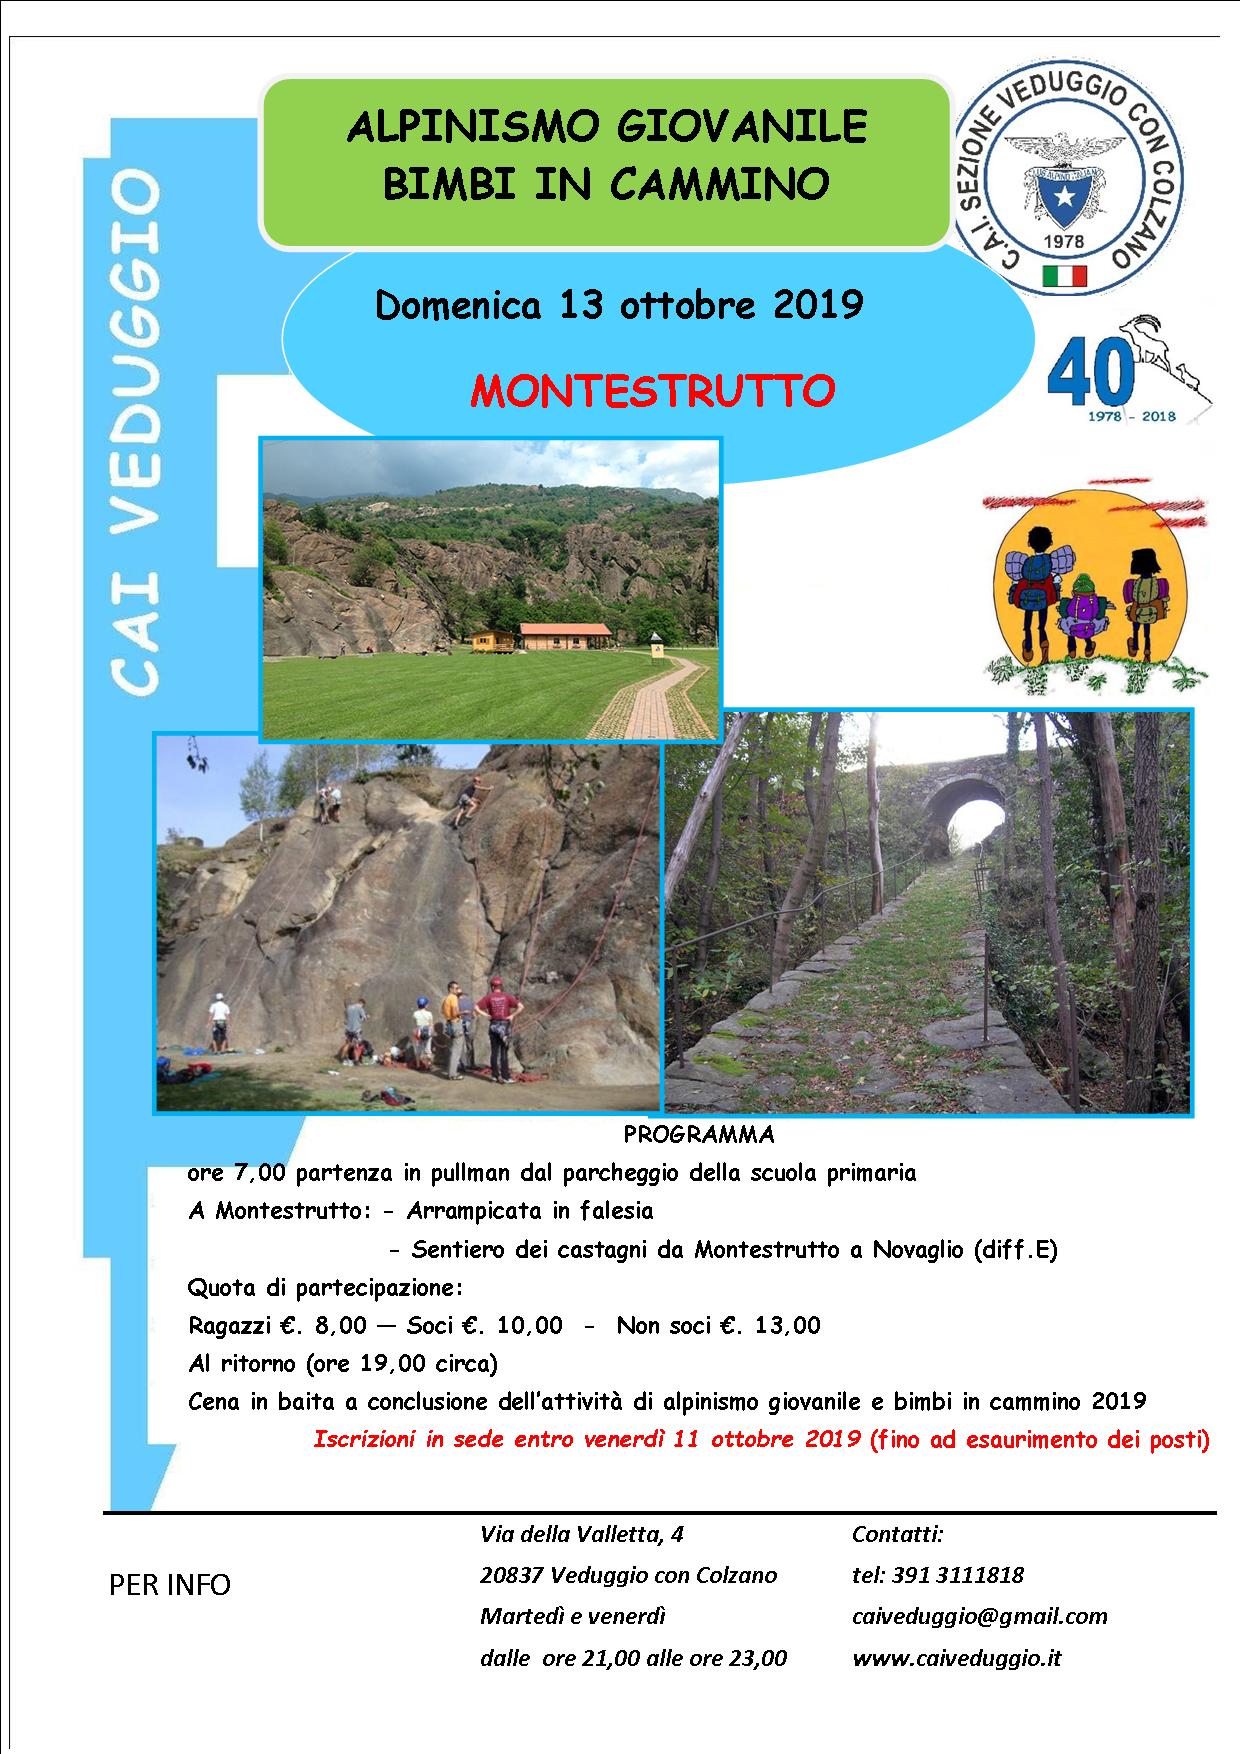 Domenica 13 ottobre 2019 – Alpinismo Giovanile/Bimbi in cammino – Escursione a Montestrutto